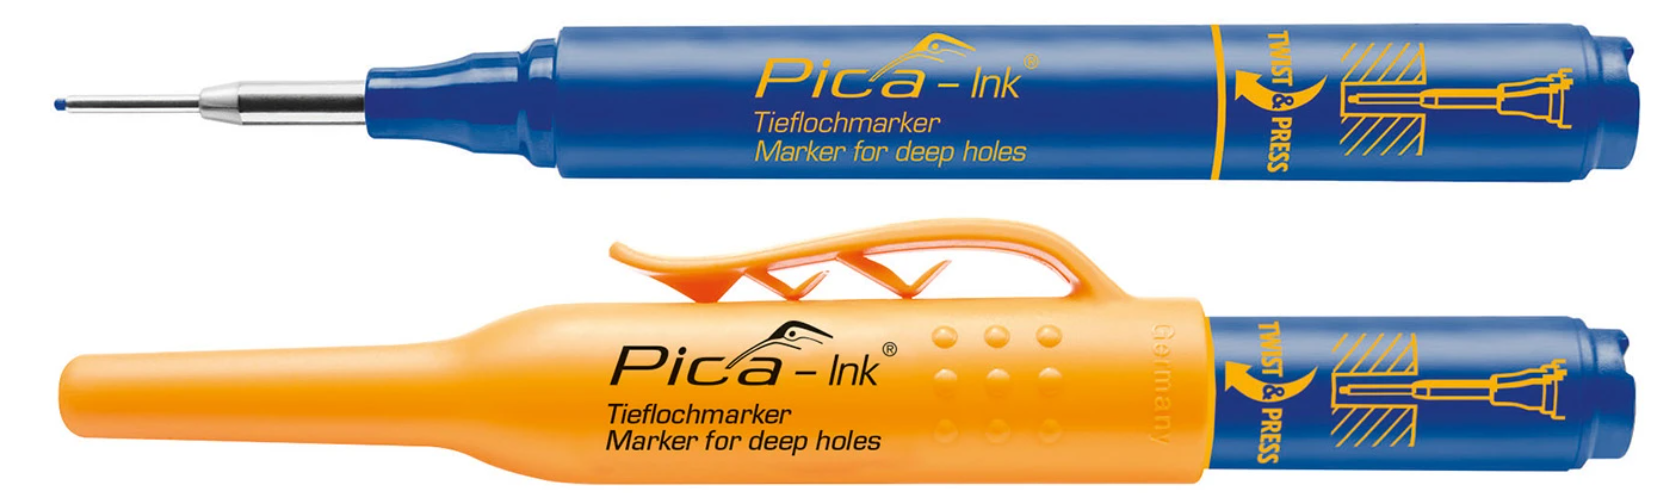 Pica-150-40-Markeerstift-blauw.png